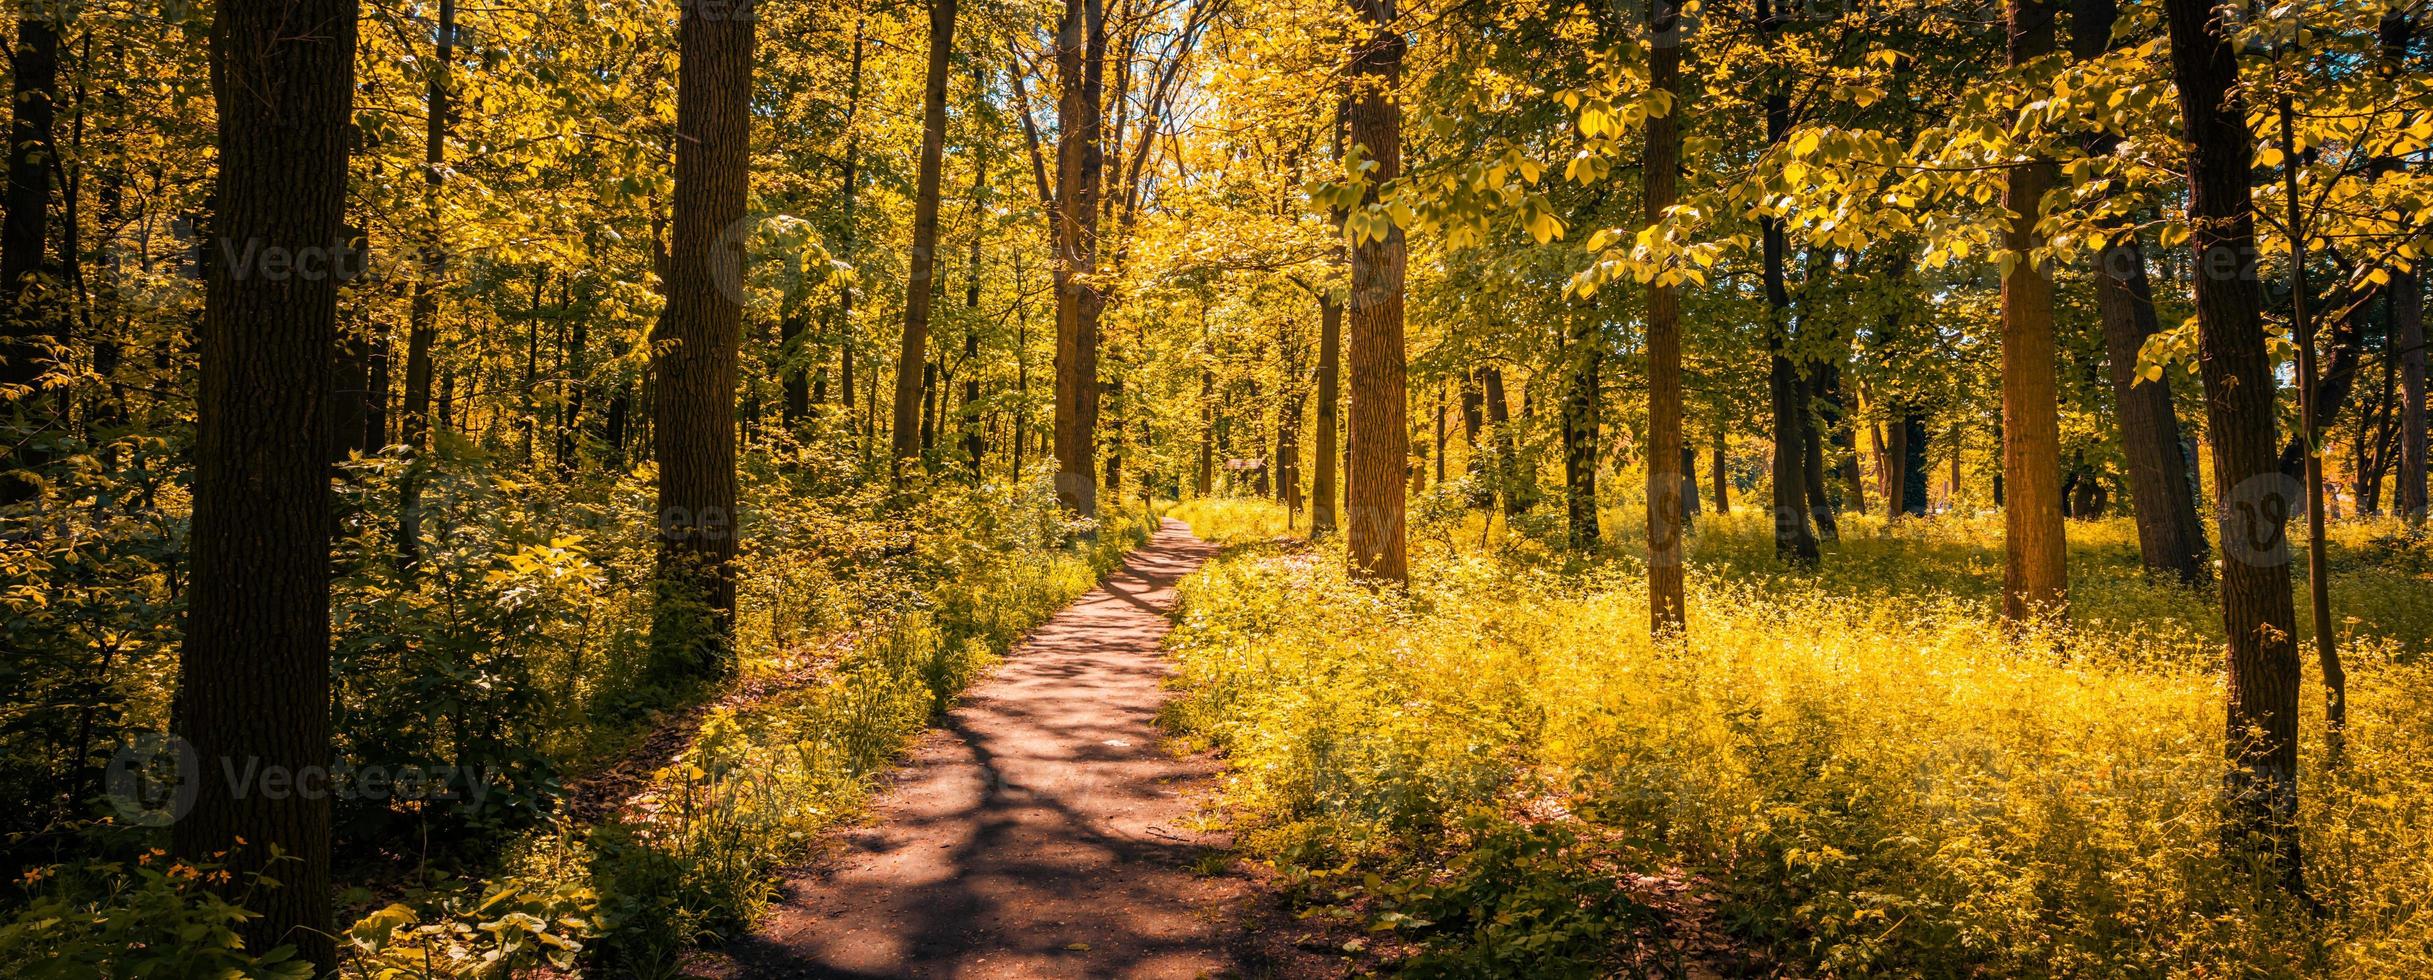 sentier tranquille dans un parc en automne, avec des faisceaux de lumière tombant à travers les arbres. paysage naturel incroyable, aventure de randonnée, promenade de la liberté, herbe et arbres aux feuilles colorées photo